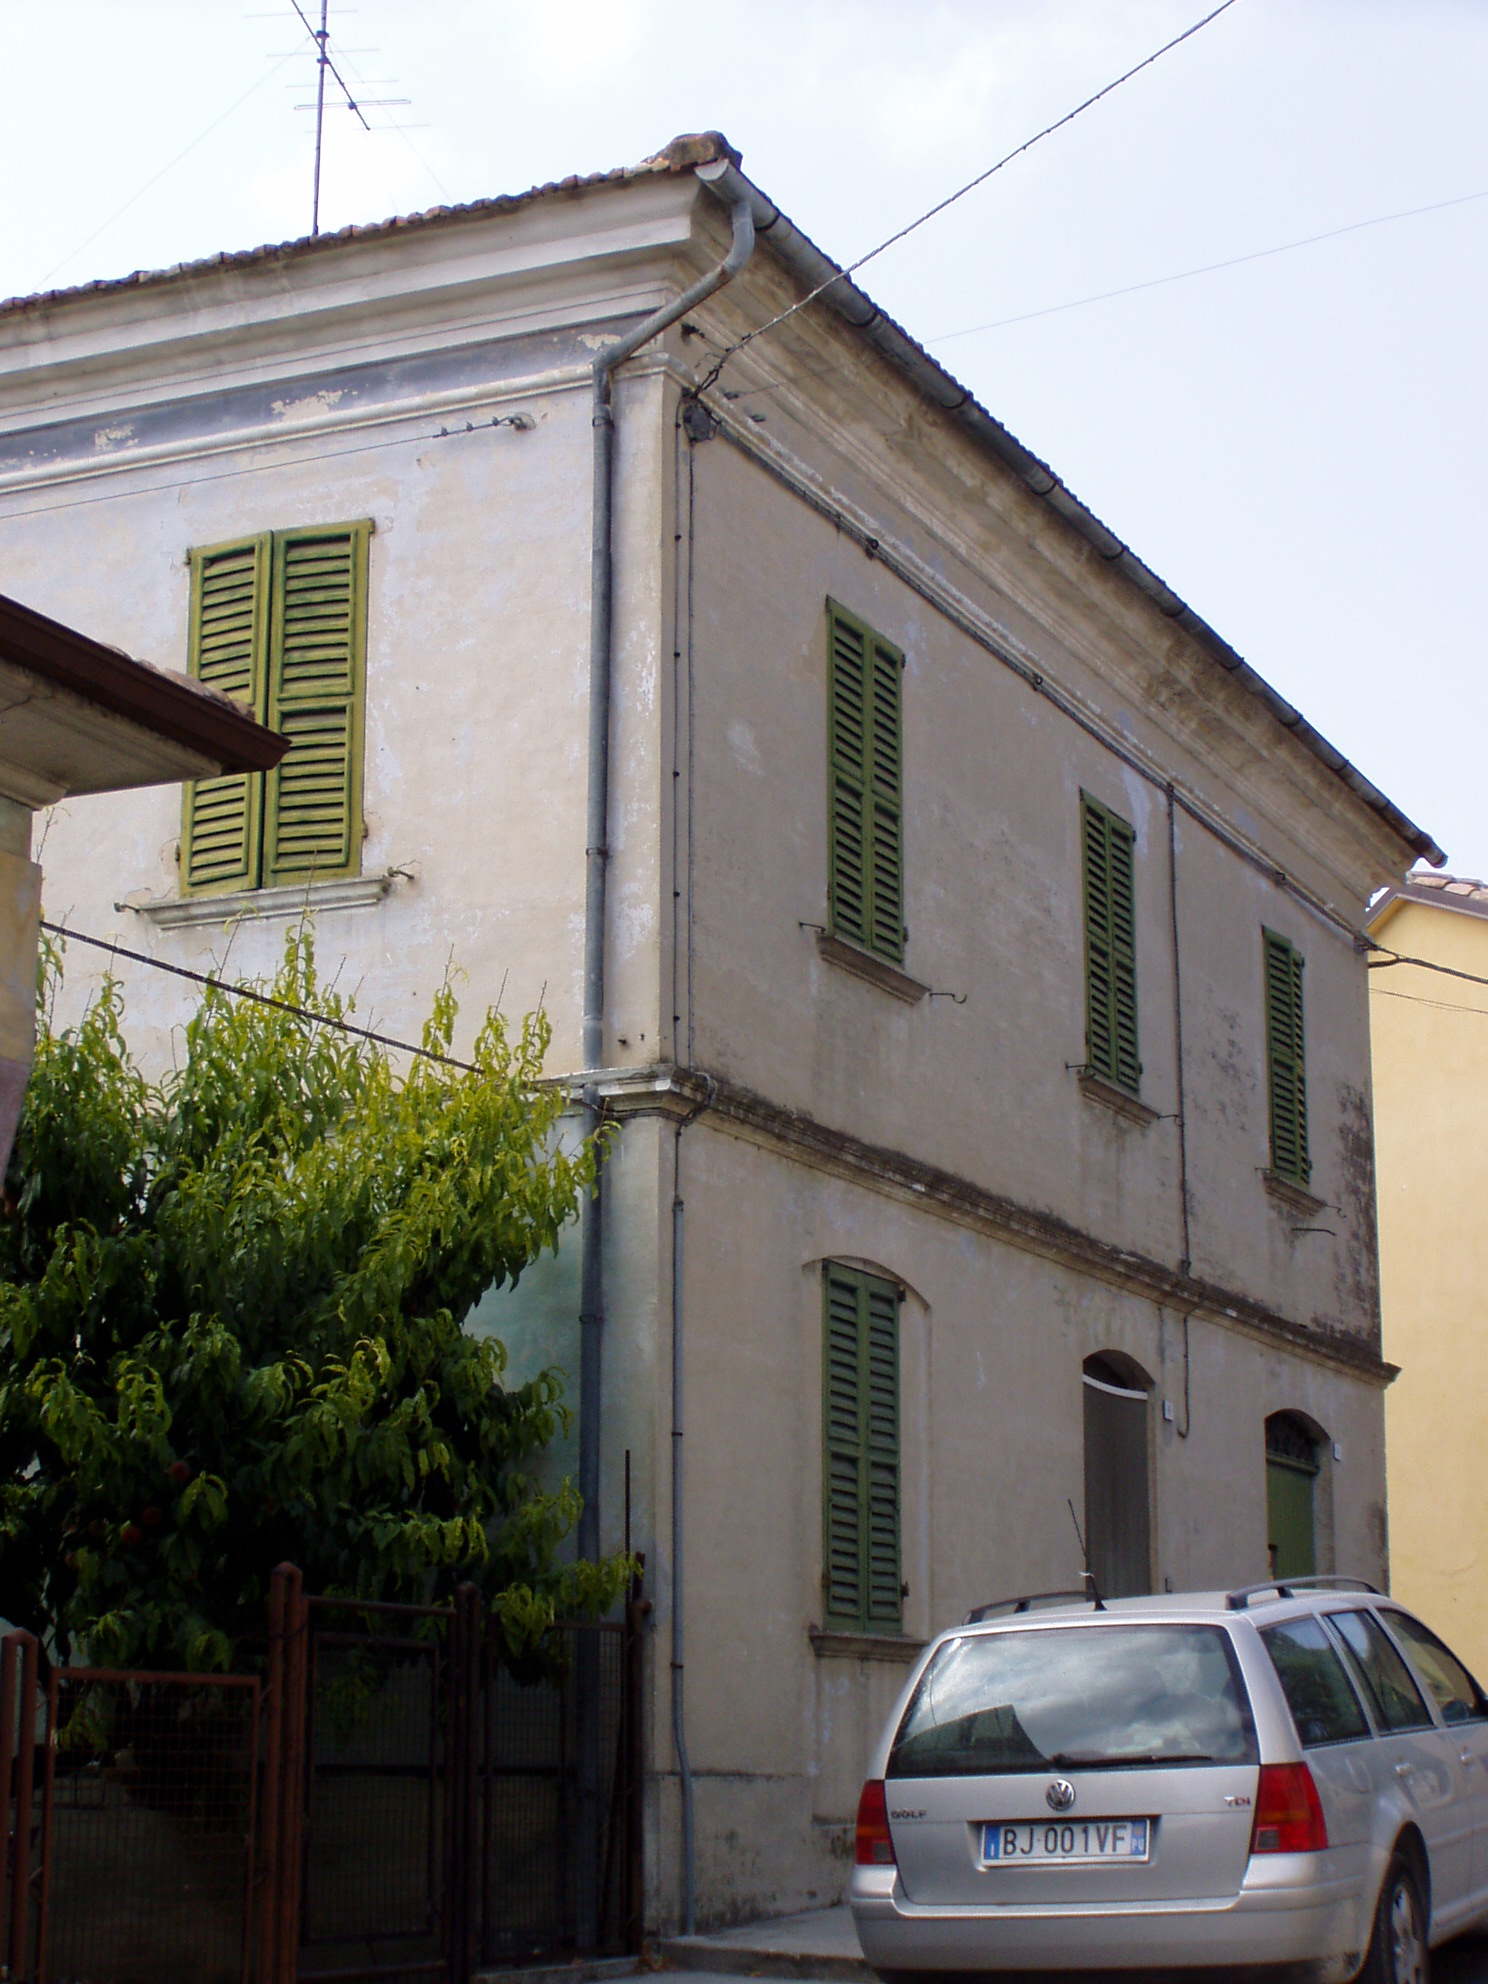 Casa isolata (casa isolata) - Monte Porzio (PU) 